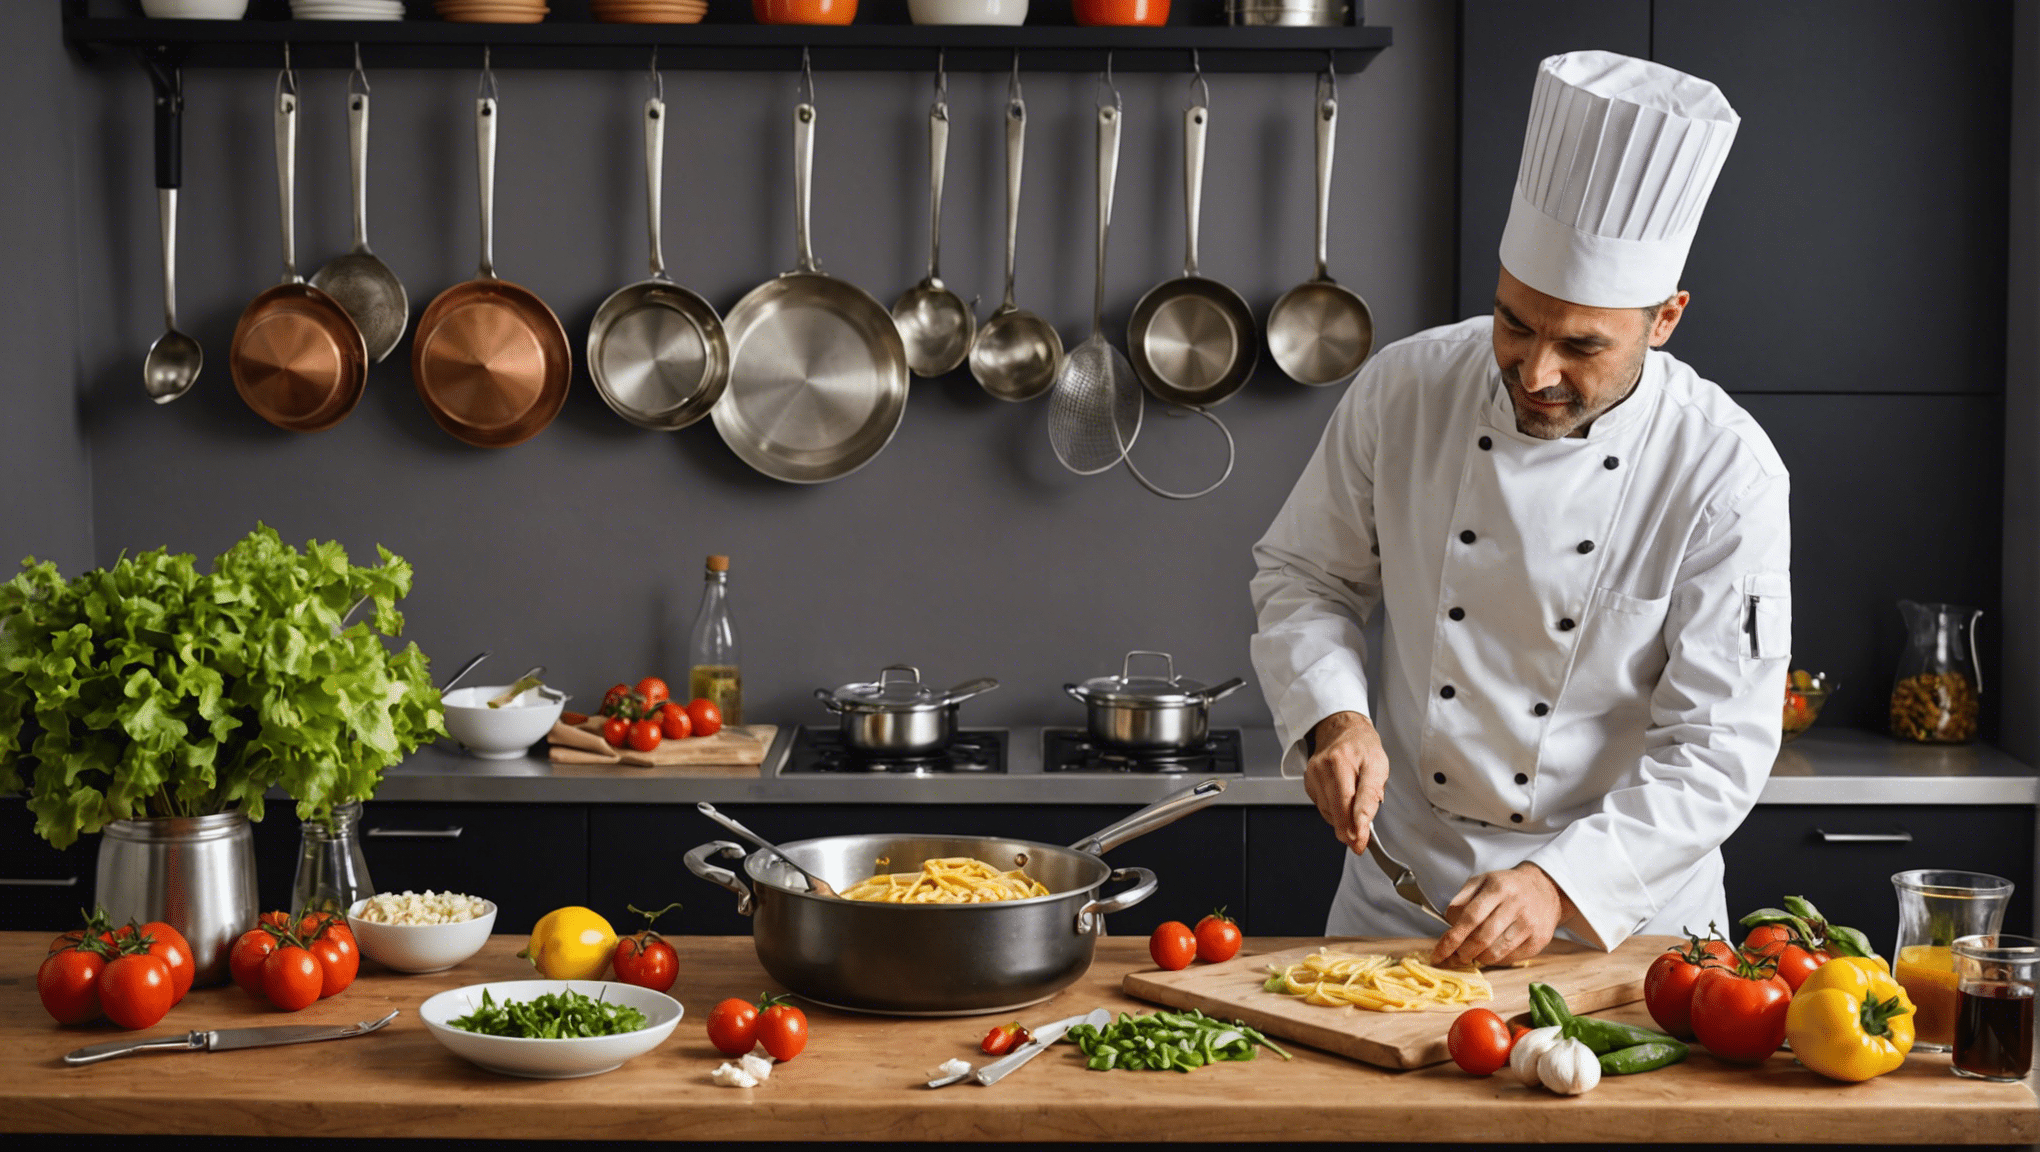 découvrez comment maîtriser la cuisine italienne facilement avec nos conseils et recettes faciles à réaliser. apprenez les secrets des plats italiens savoureux et impressionnez vos convives !